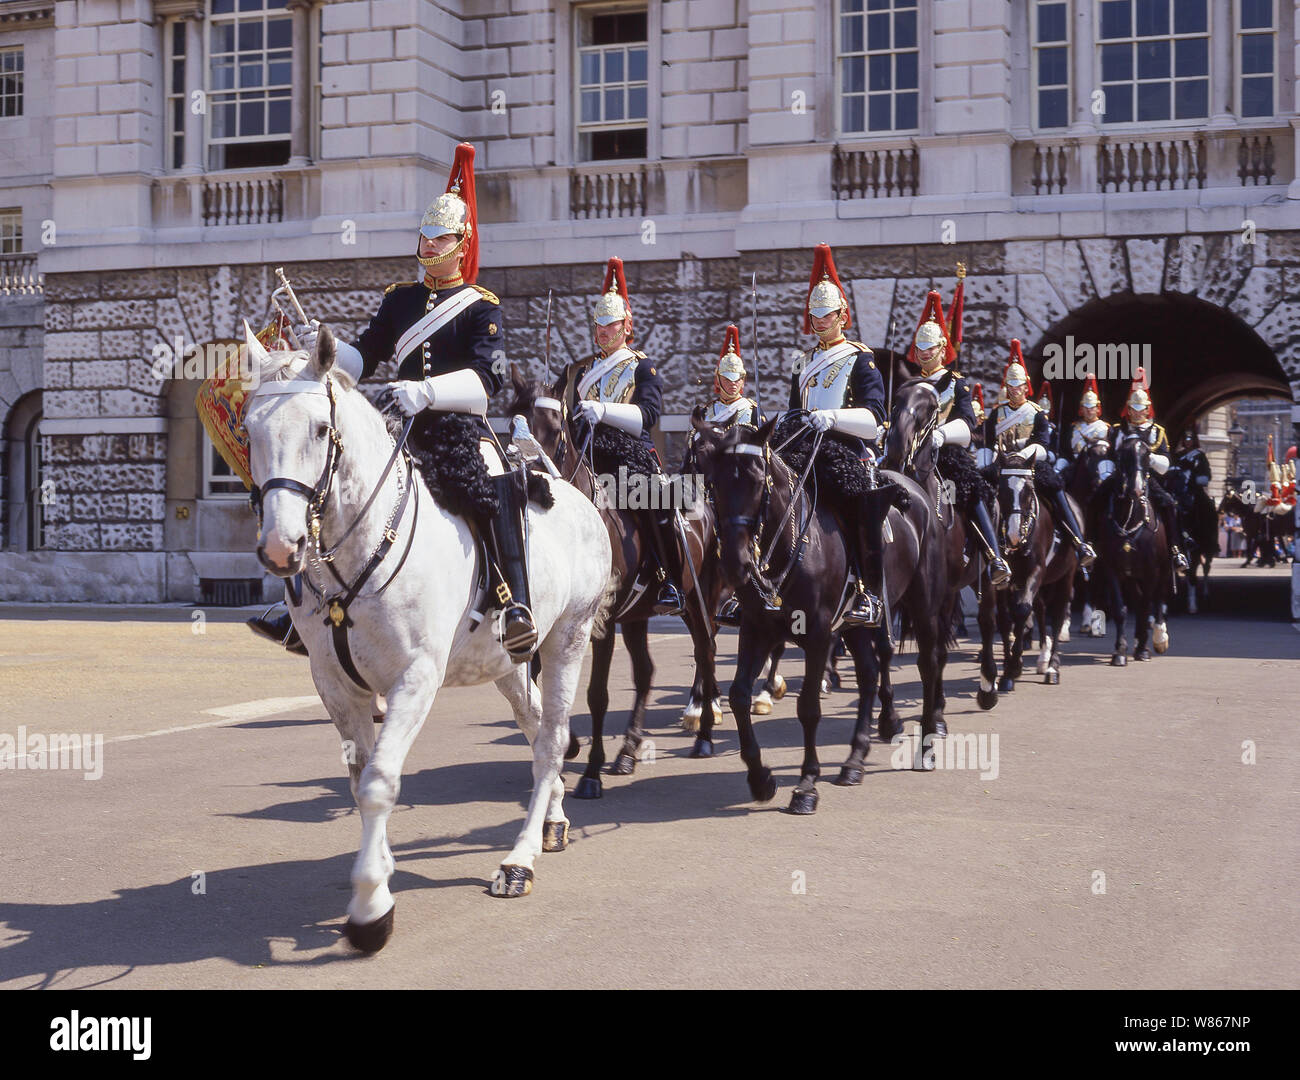 Ceremonia De Cambio De Guardia, Desfile De Guardias De Caballo, Whitehall, City Of Westminster, Greater London, Inglaterra, Reino Unido Foto de stock